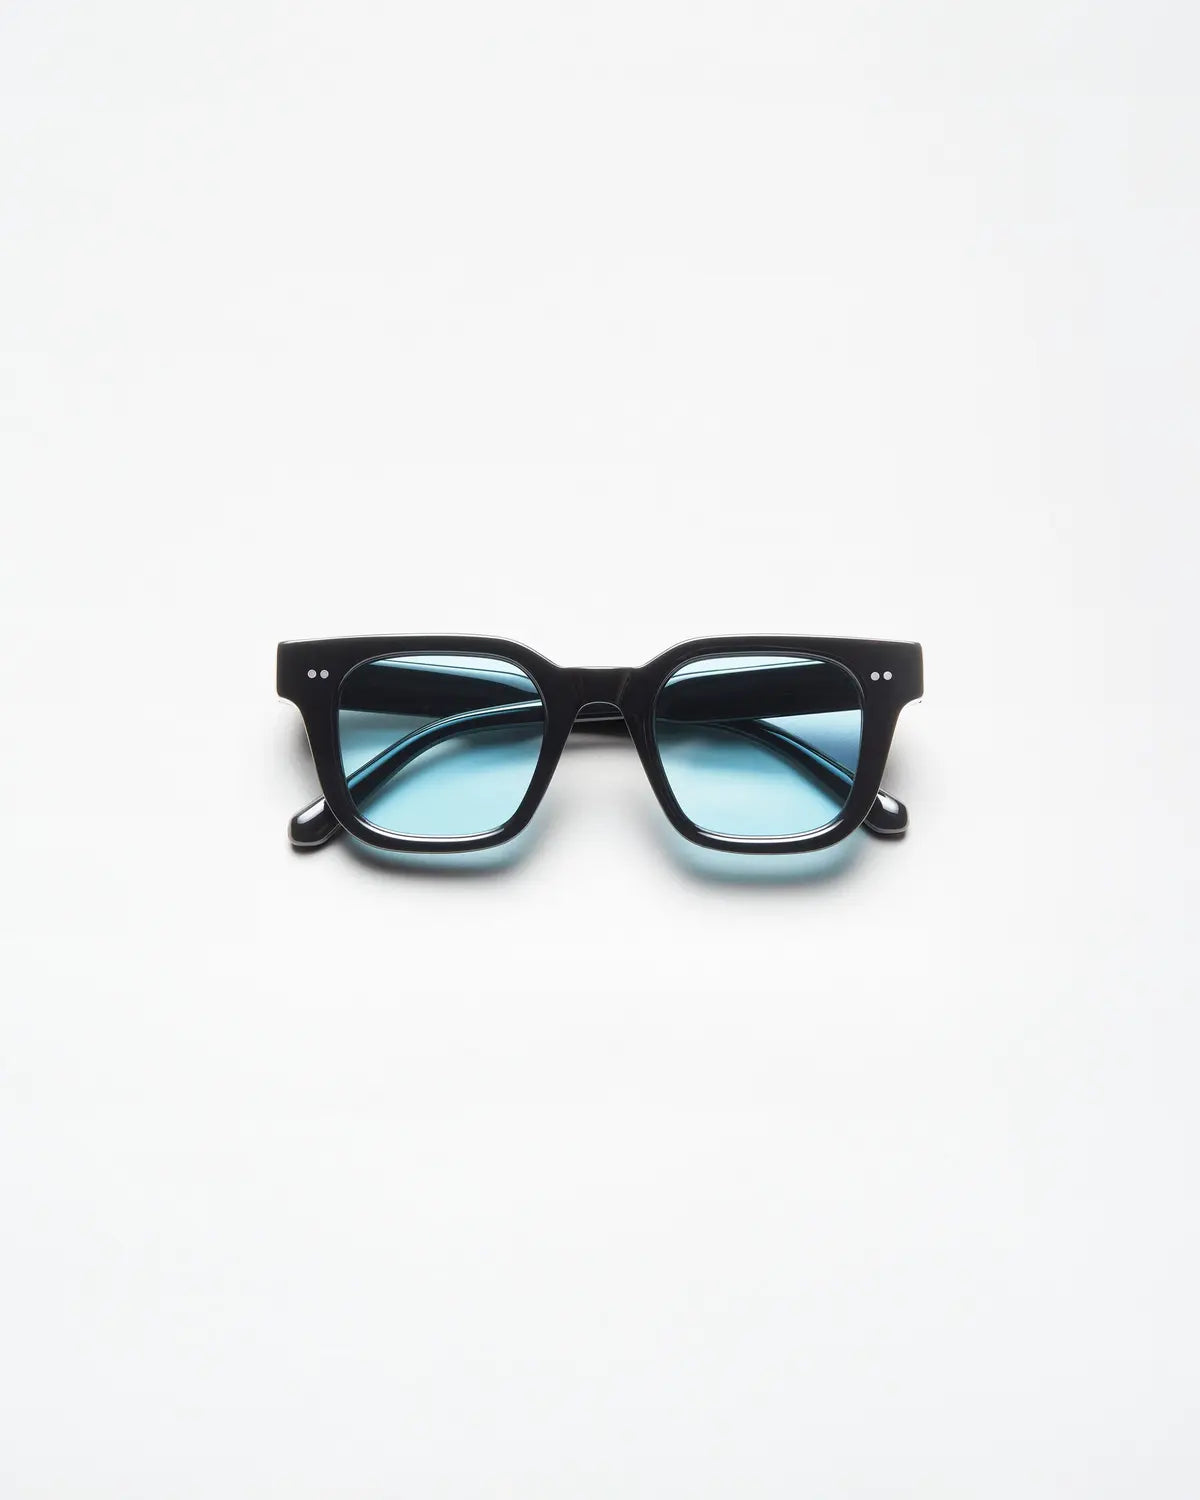 Chimi Eyewear 04 Lab Black Blue